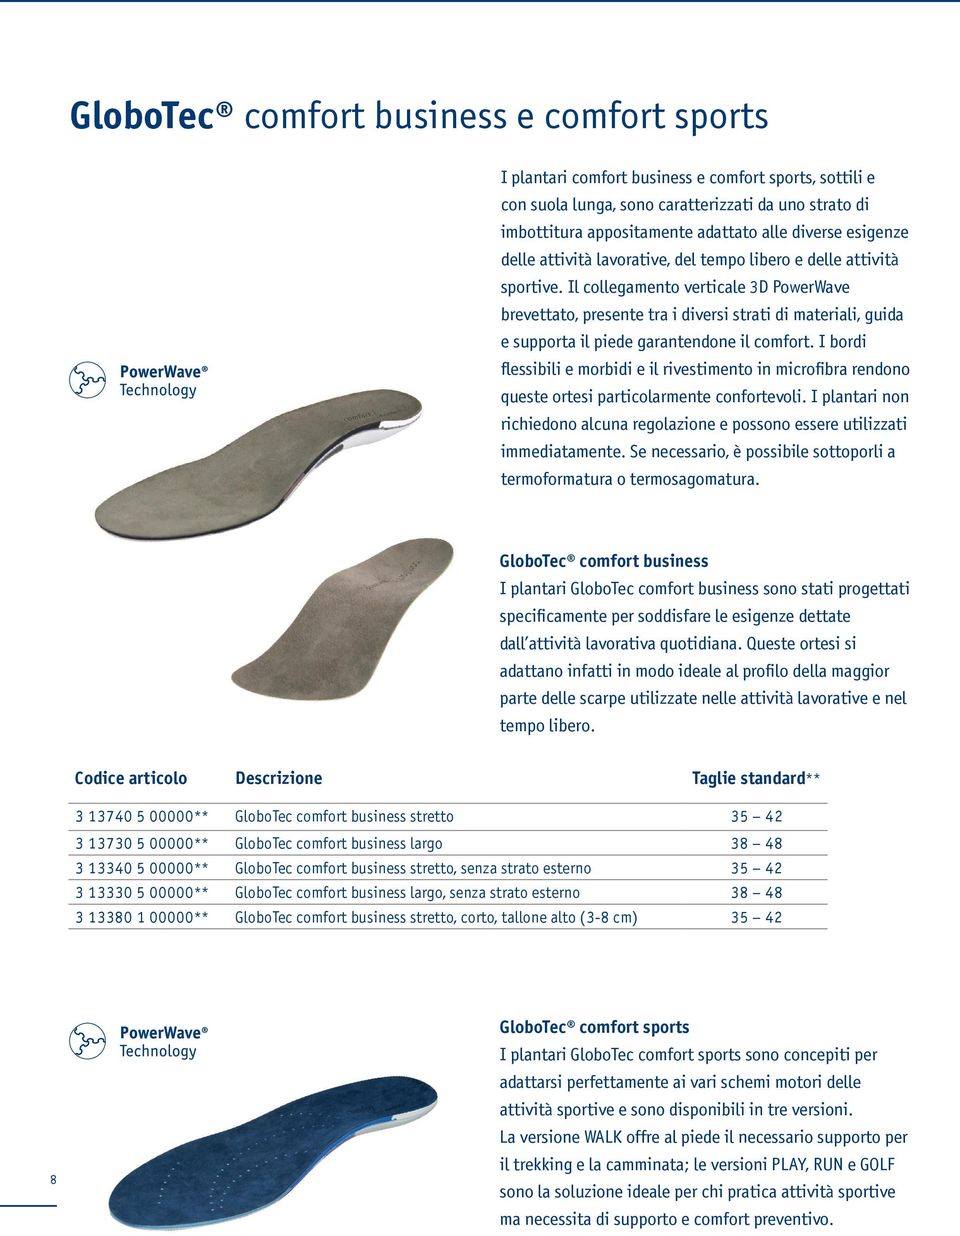 Il collegamento verticale 3D PowerWave brevettato, presente tra i diversi strati di materiali, guida e supporta il piede garantendone il comfort. I bordi queste ortesi particolarmente confortevoli.